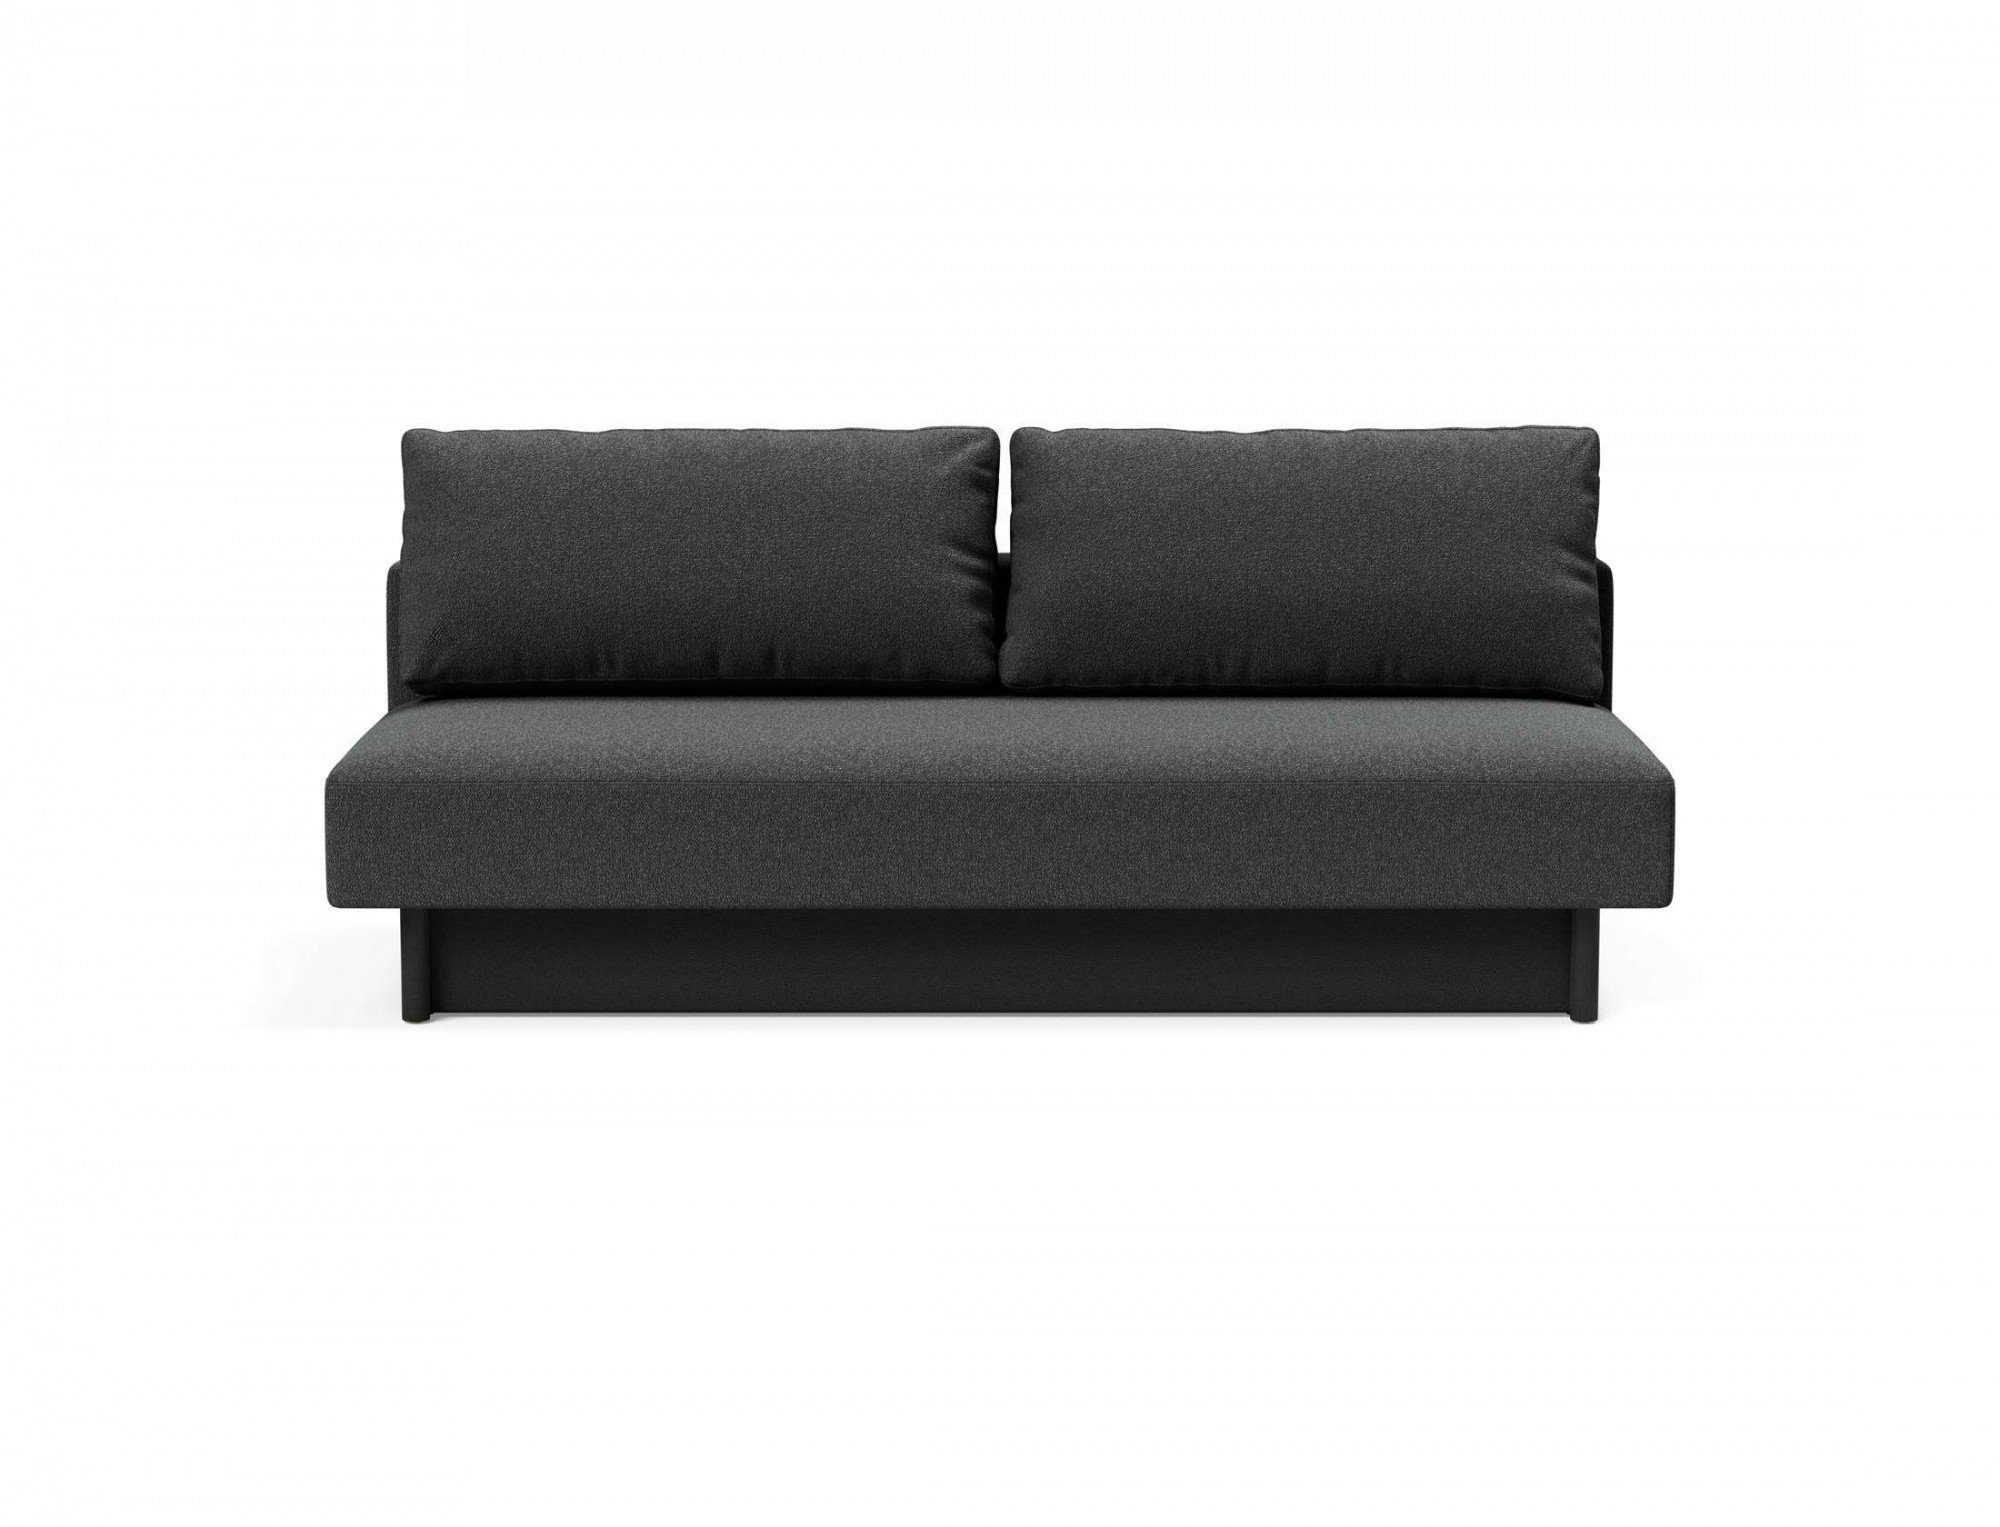 INNOVATION LIVING ™ 3-Sitzer Merga Schlafsofa, großem Bettkasten,minimalistischem Design, bedarf wenig Stellfläche